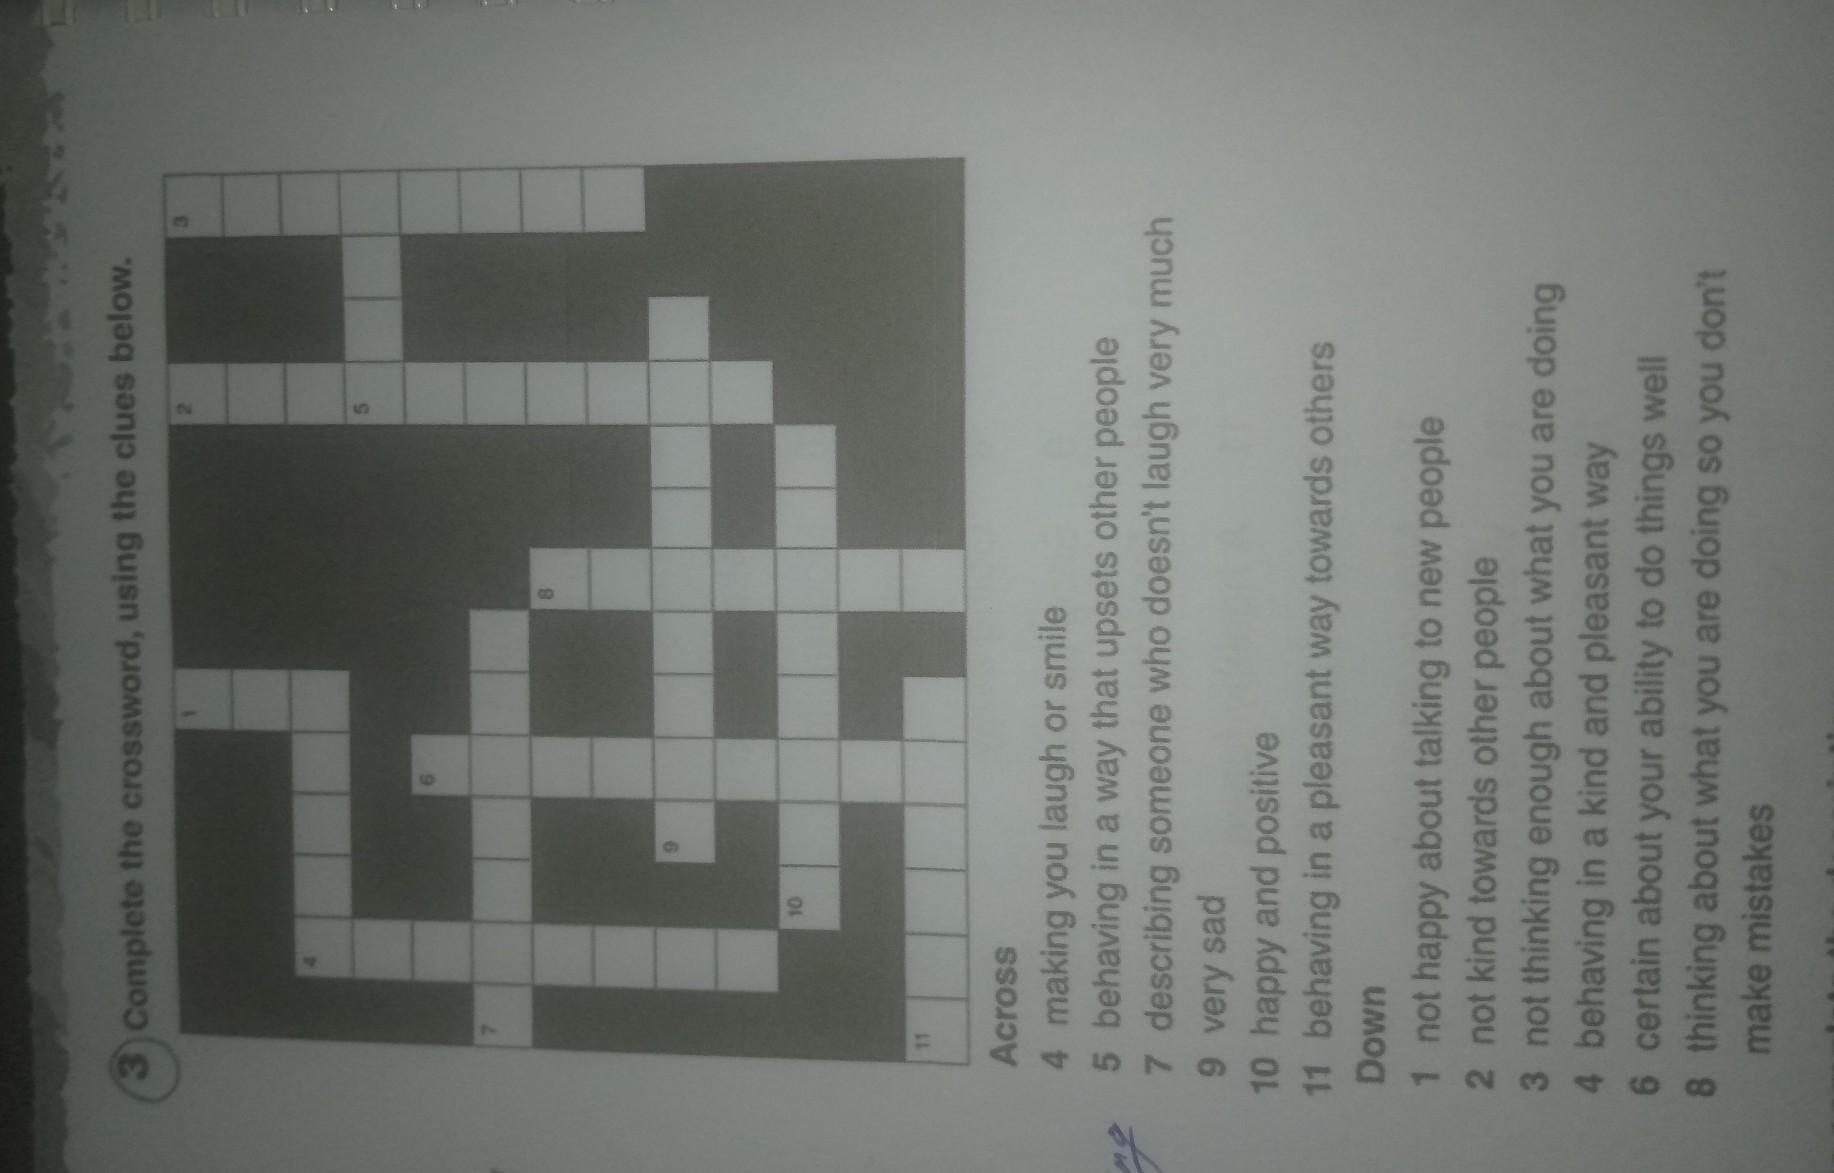 Complete the crossword 3klass